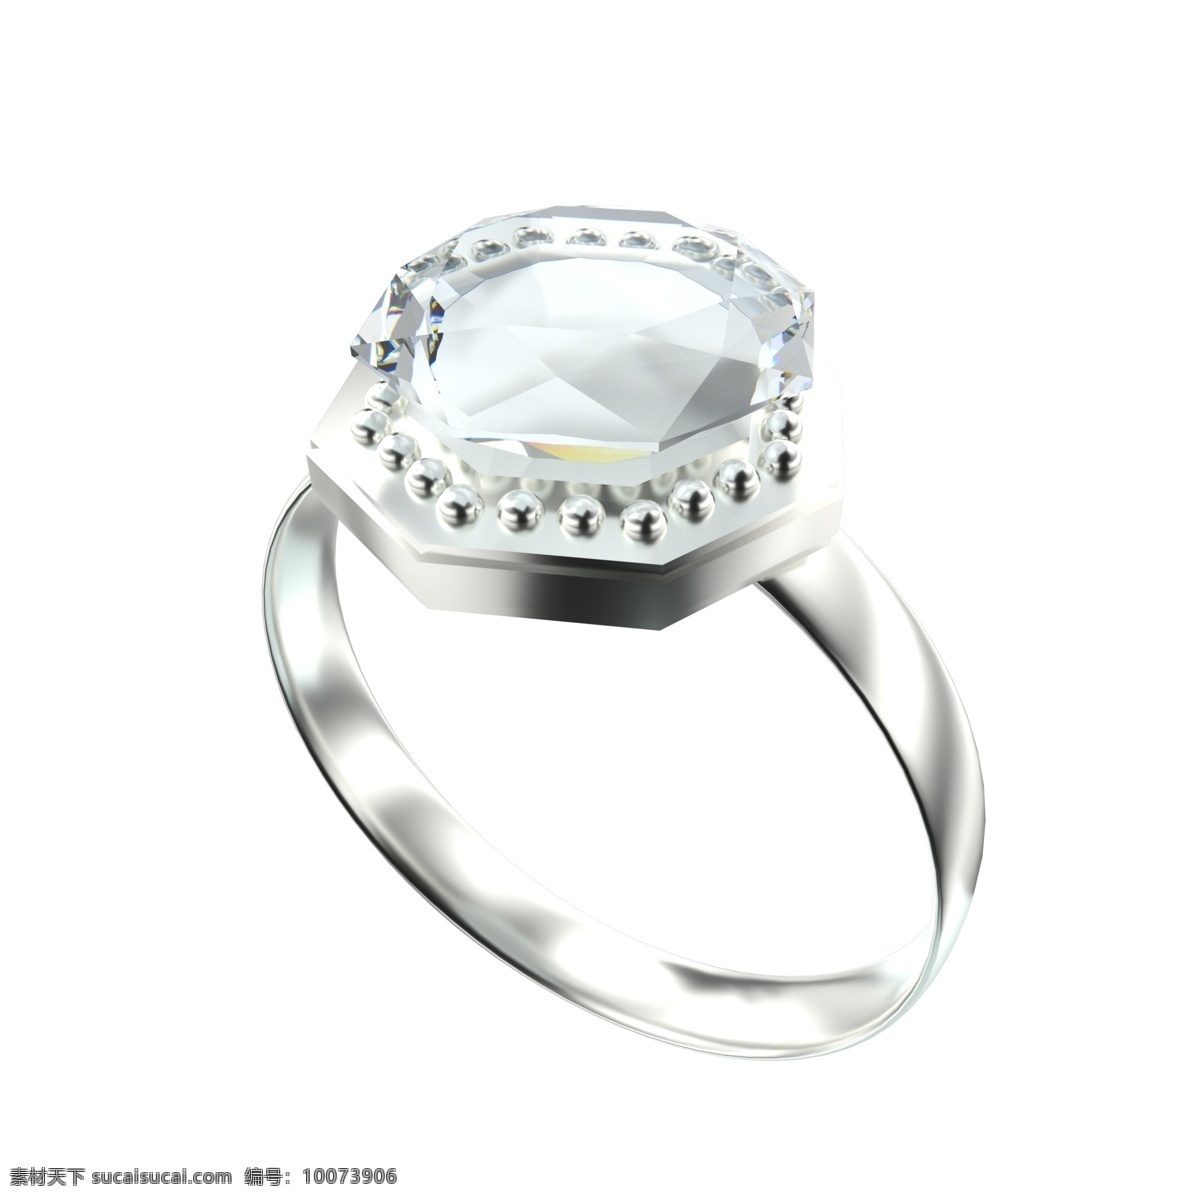 3d 女性 钻石 戒指 c4d 钻石项链 金属链子 金色链子 结婚 求婚 订婚 情侣 情人 蓝色钻石 钻石戒指